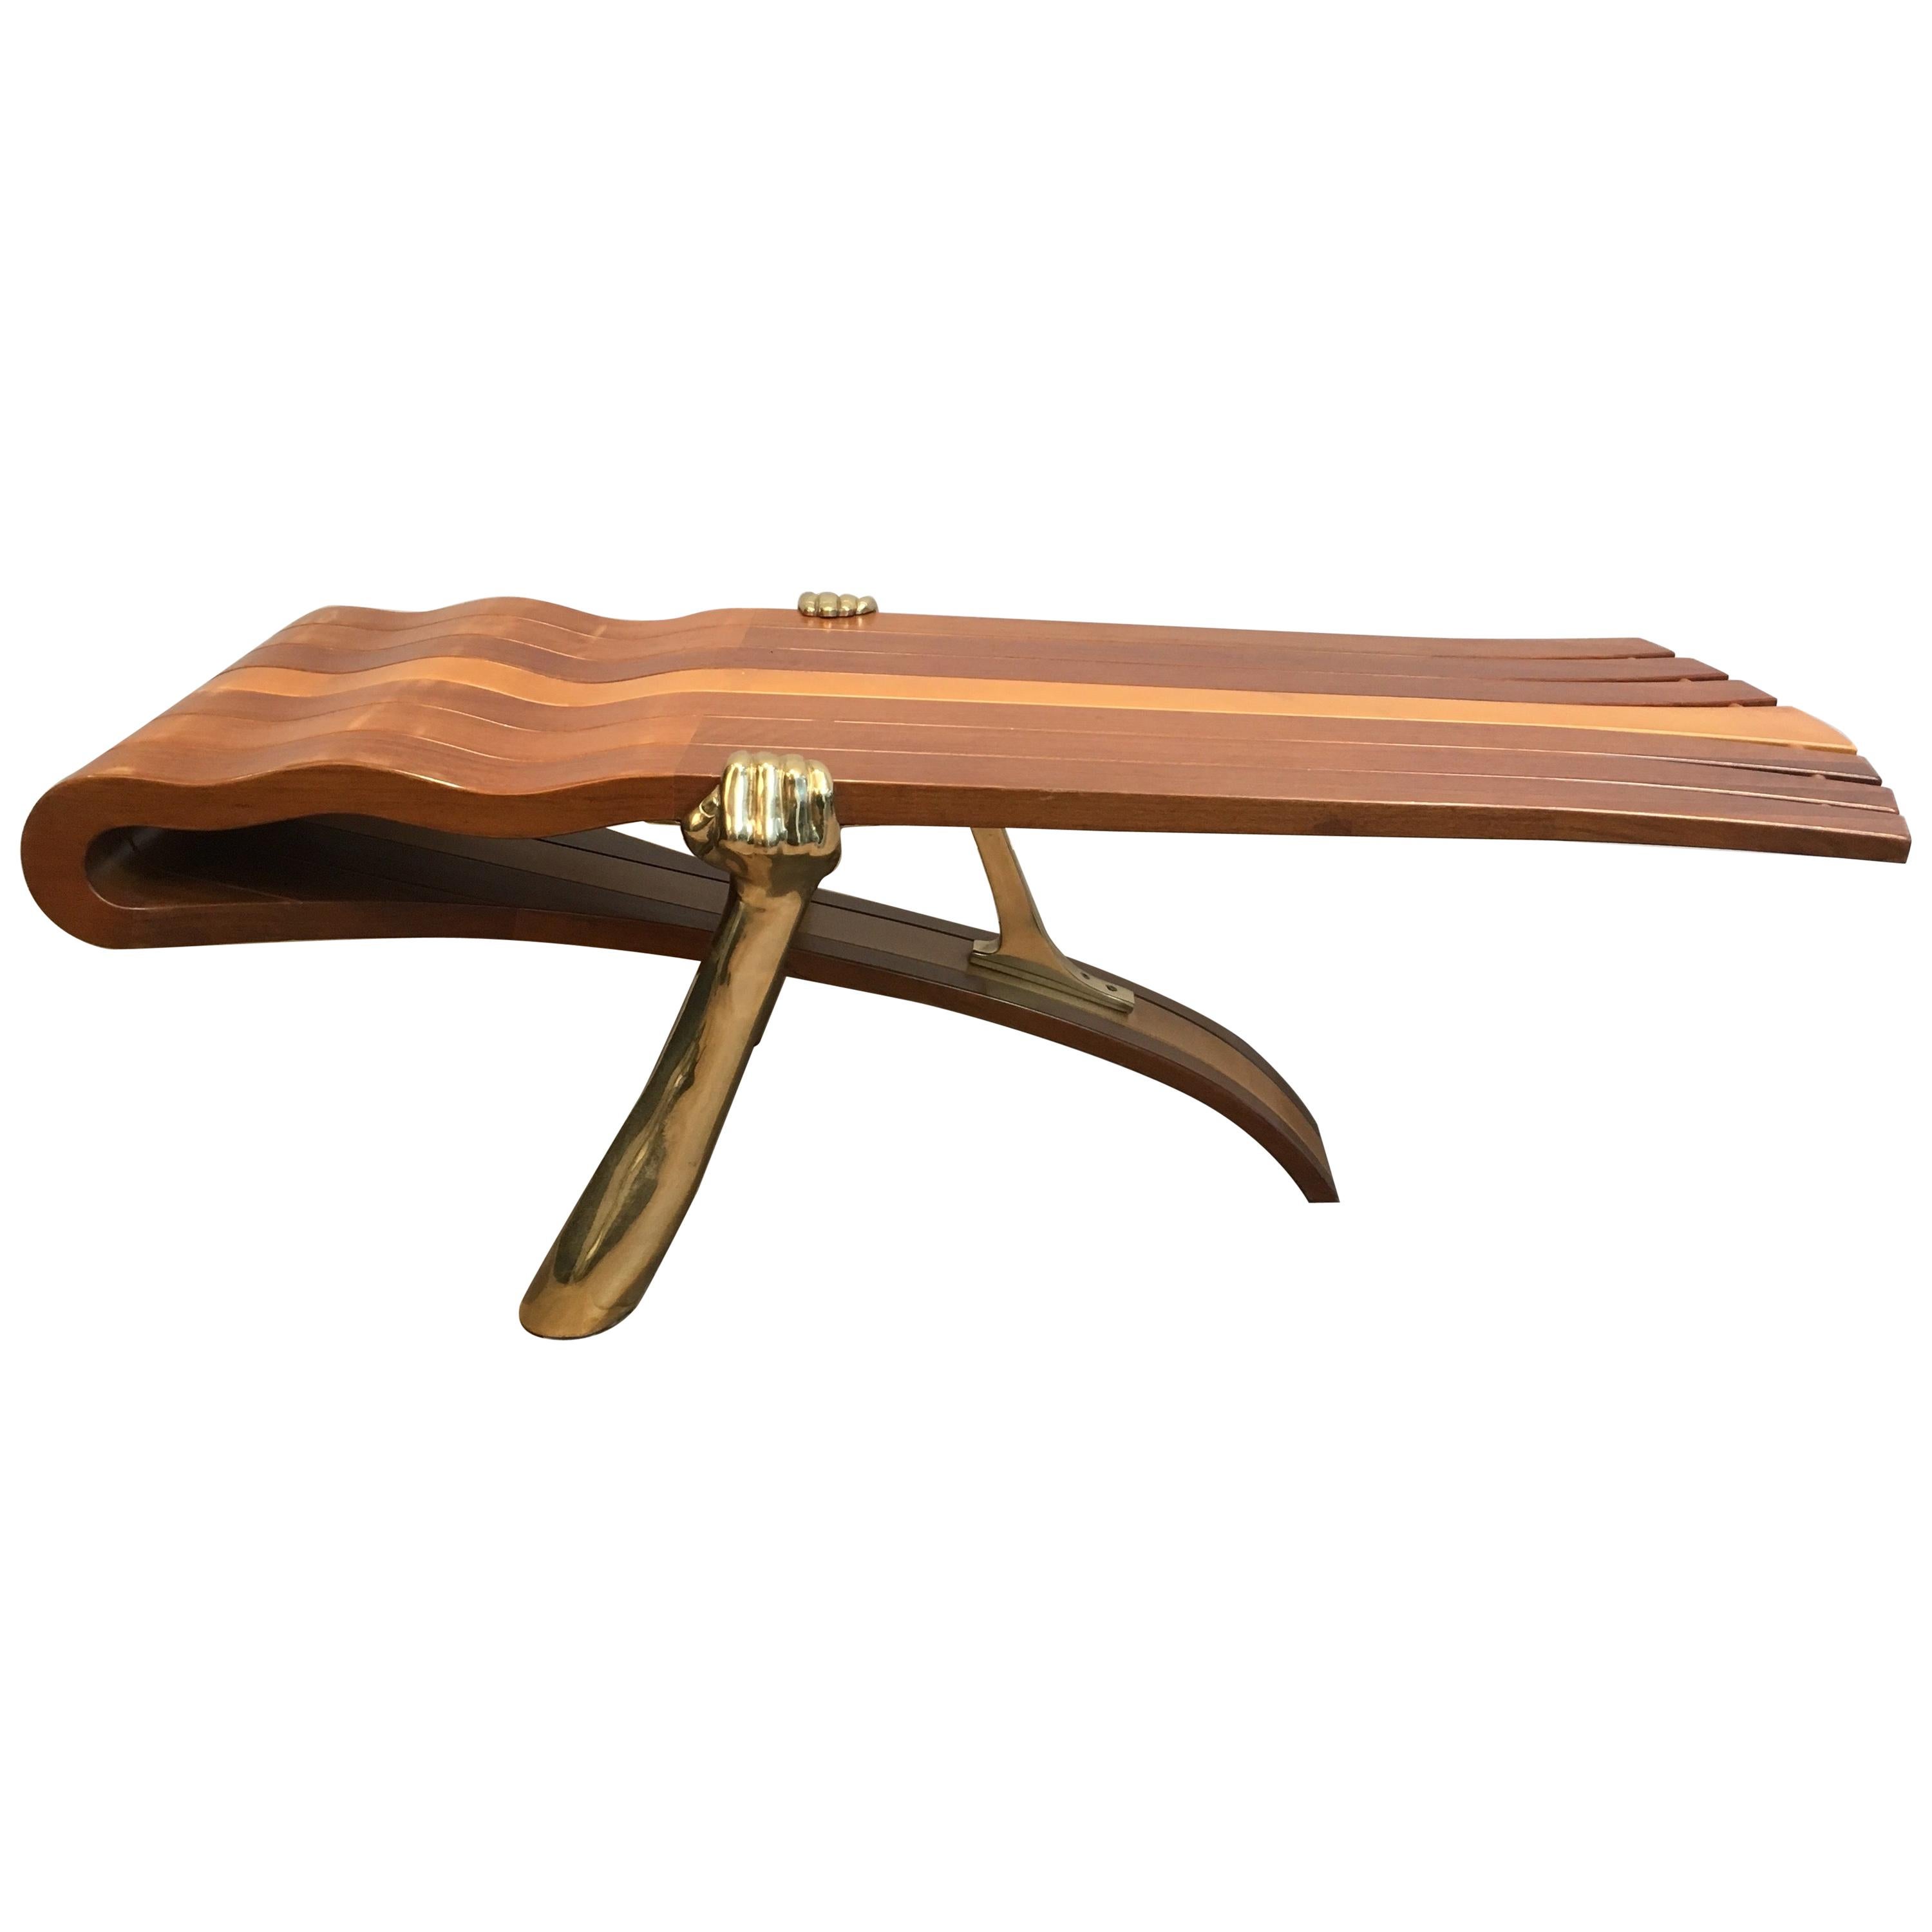 Table basse unique composée d'un plateau en bois épais de forme libre soutenu par des bras en laiton